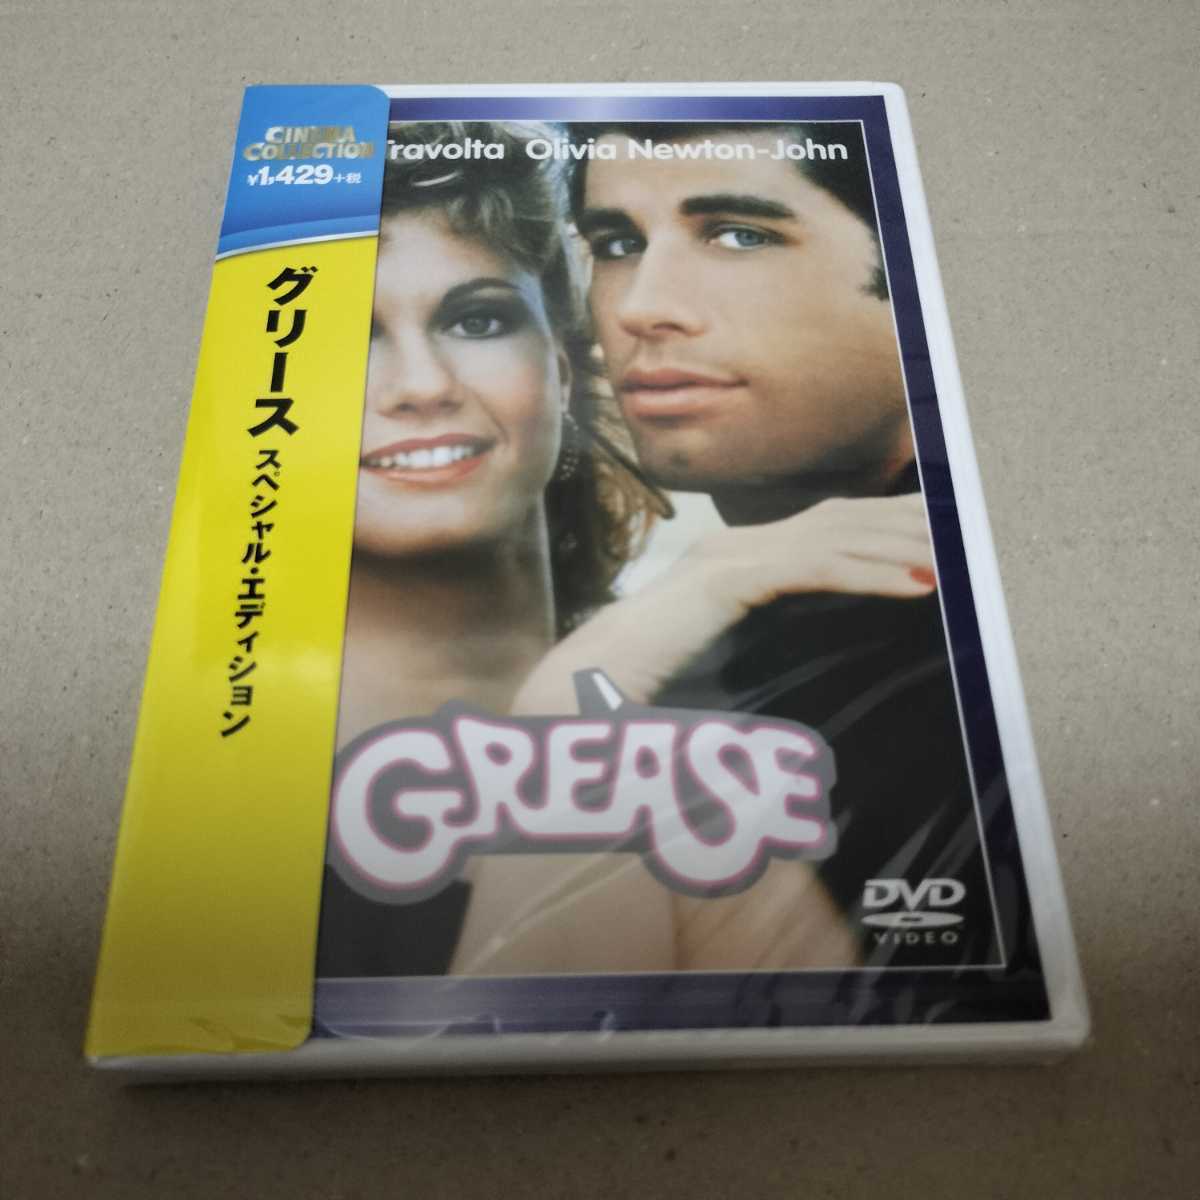 セル板 新品 グリース DVD ジョン・トラボルタ オリビア・ニュートンジョン 未開封 送料無料 匿名配送 在庫1の画像1